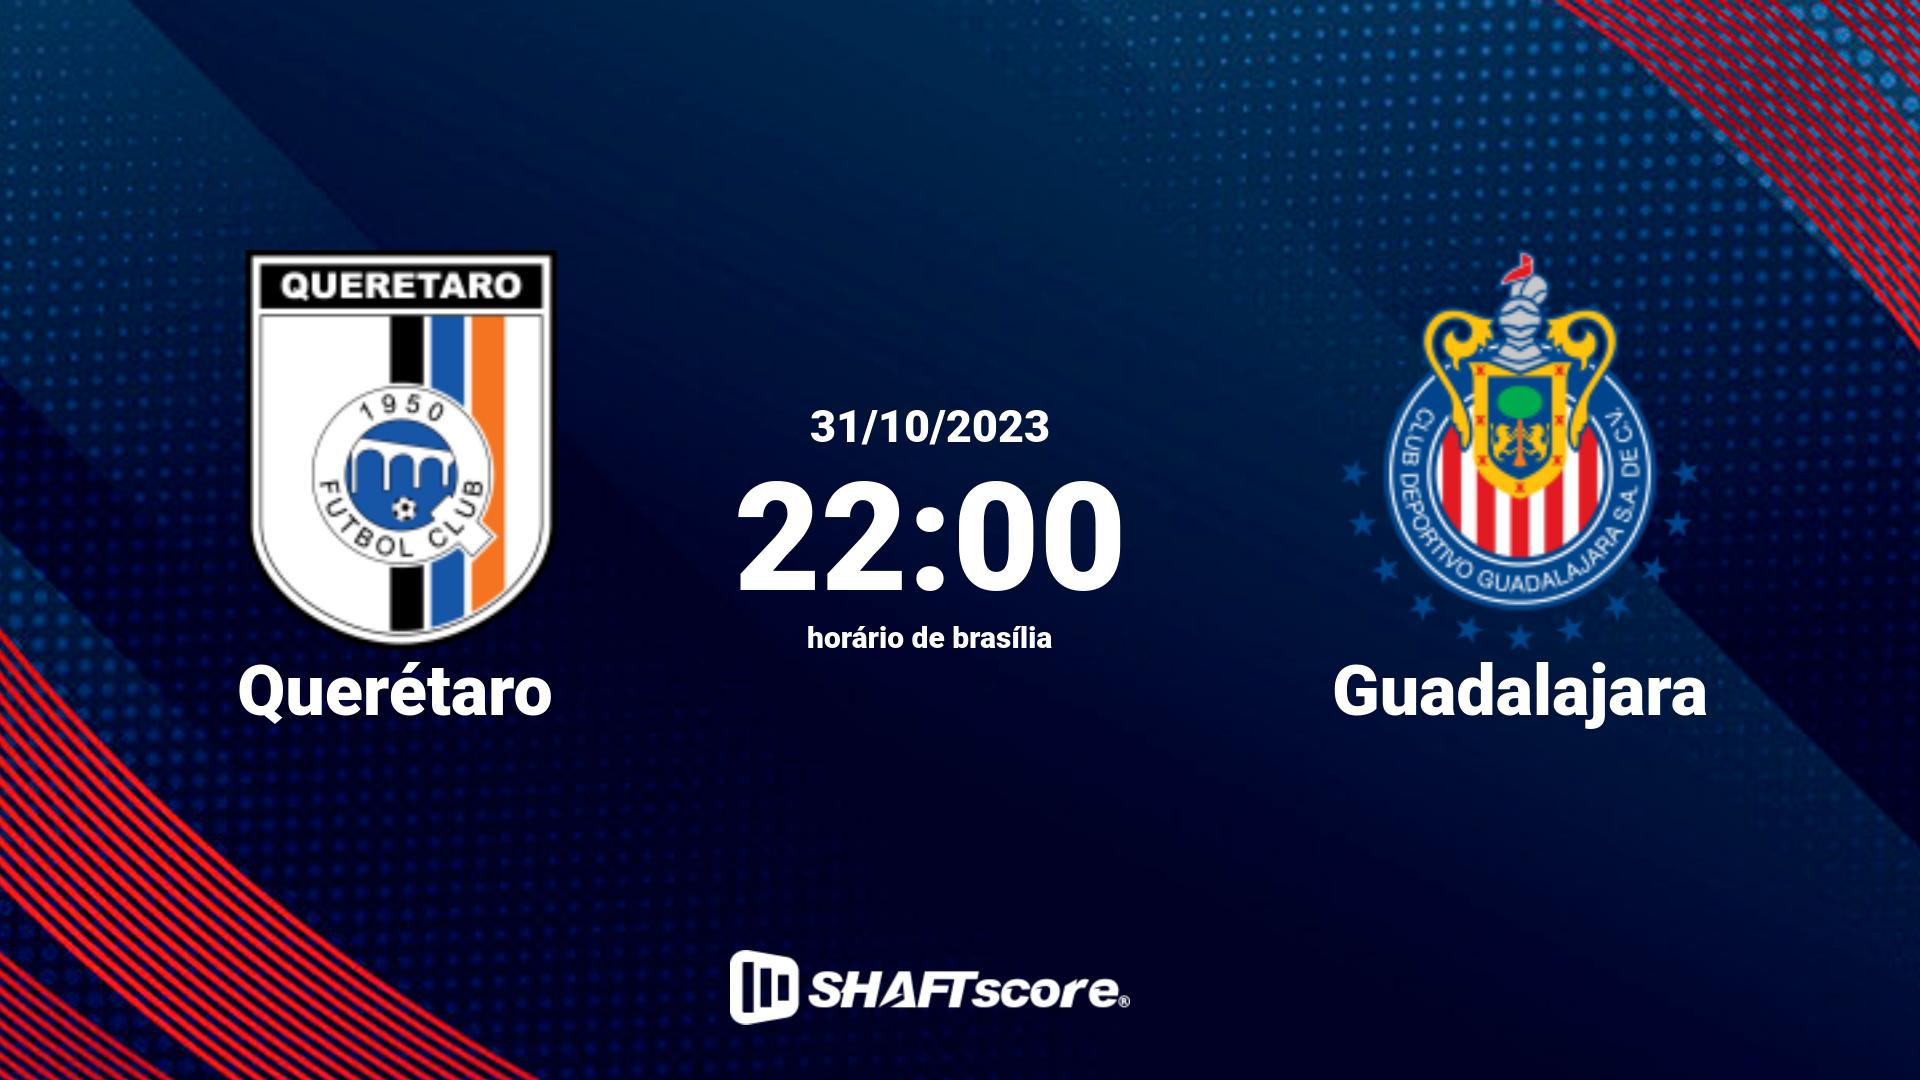 Estatísticas do jogo Querétaro vs Guadalajara 31.10 22:00